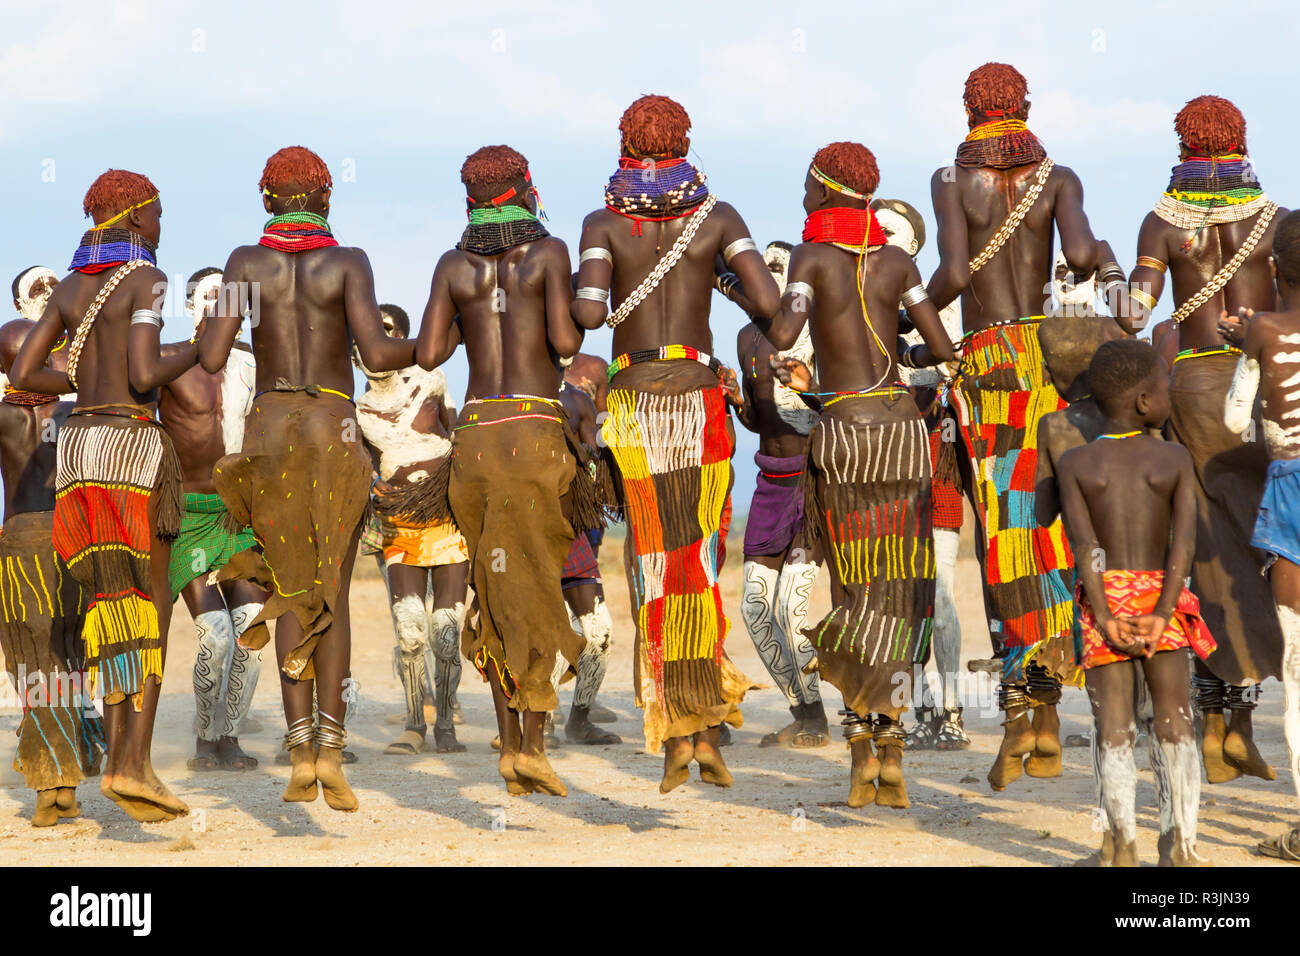 L'Afrique, l'Ethiopie, le sud de la vallée de l'Omo, Tribu Nyangatom. Les hommes et les femmes s'unissent pour aller à la danse. Banque D'Images